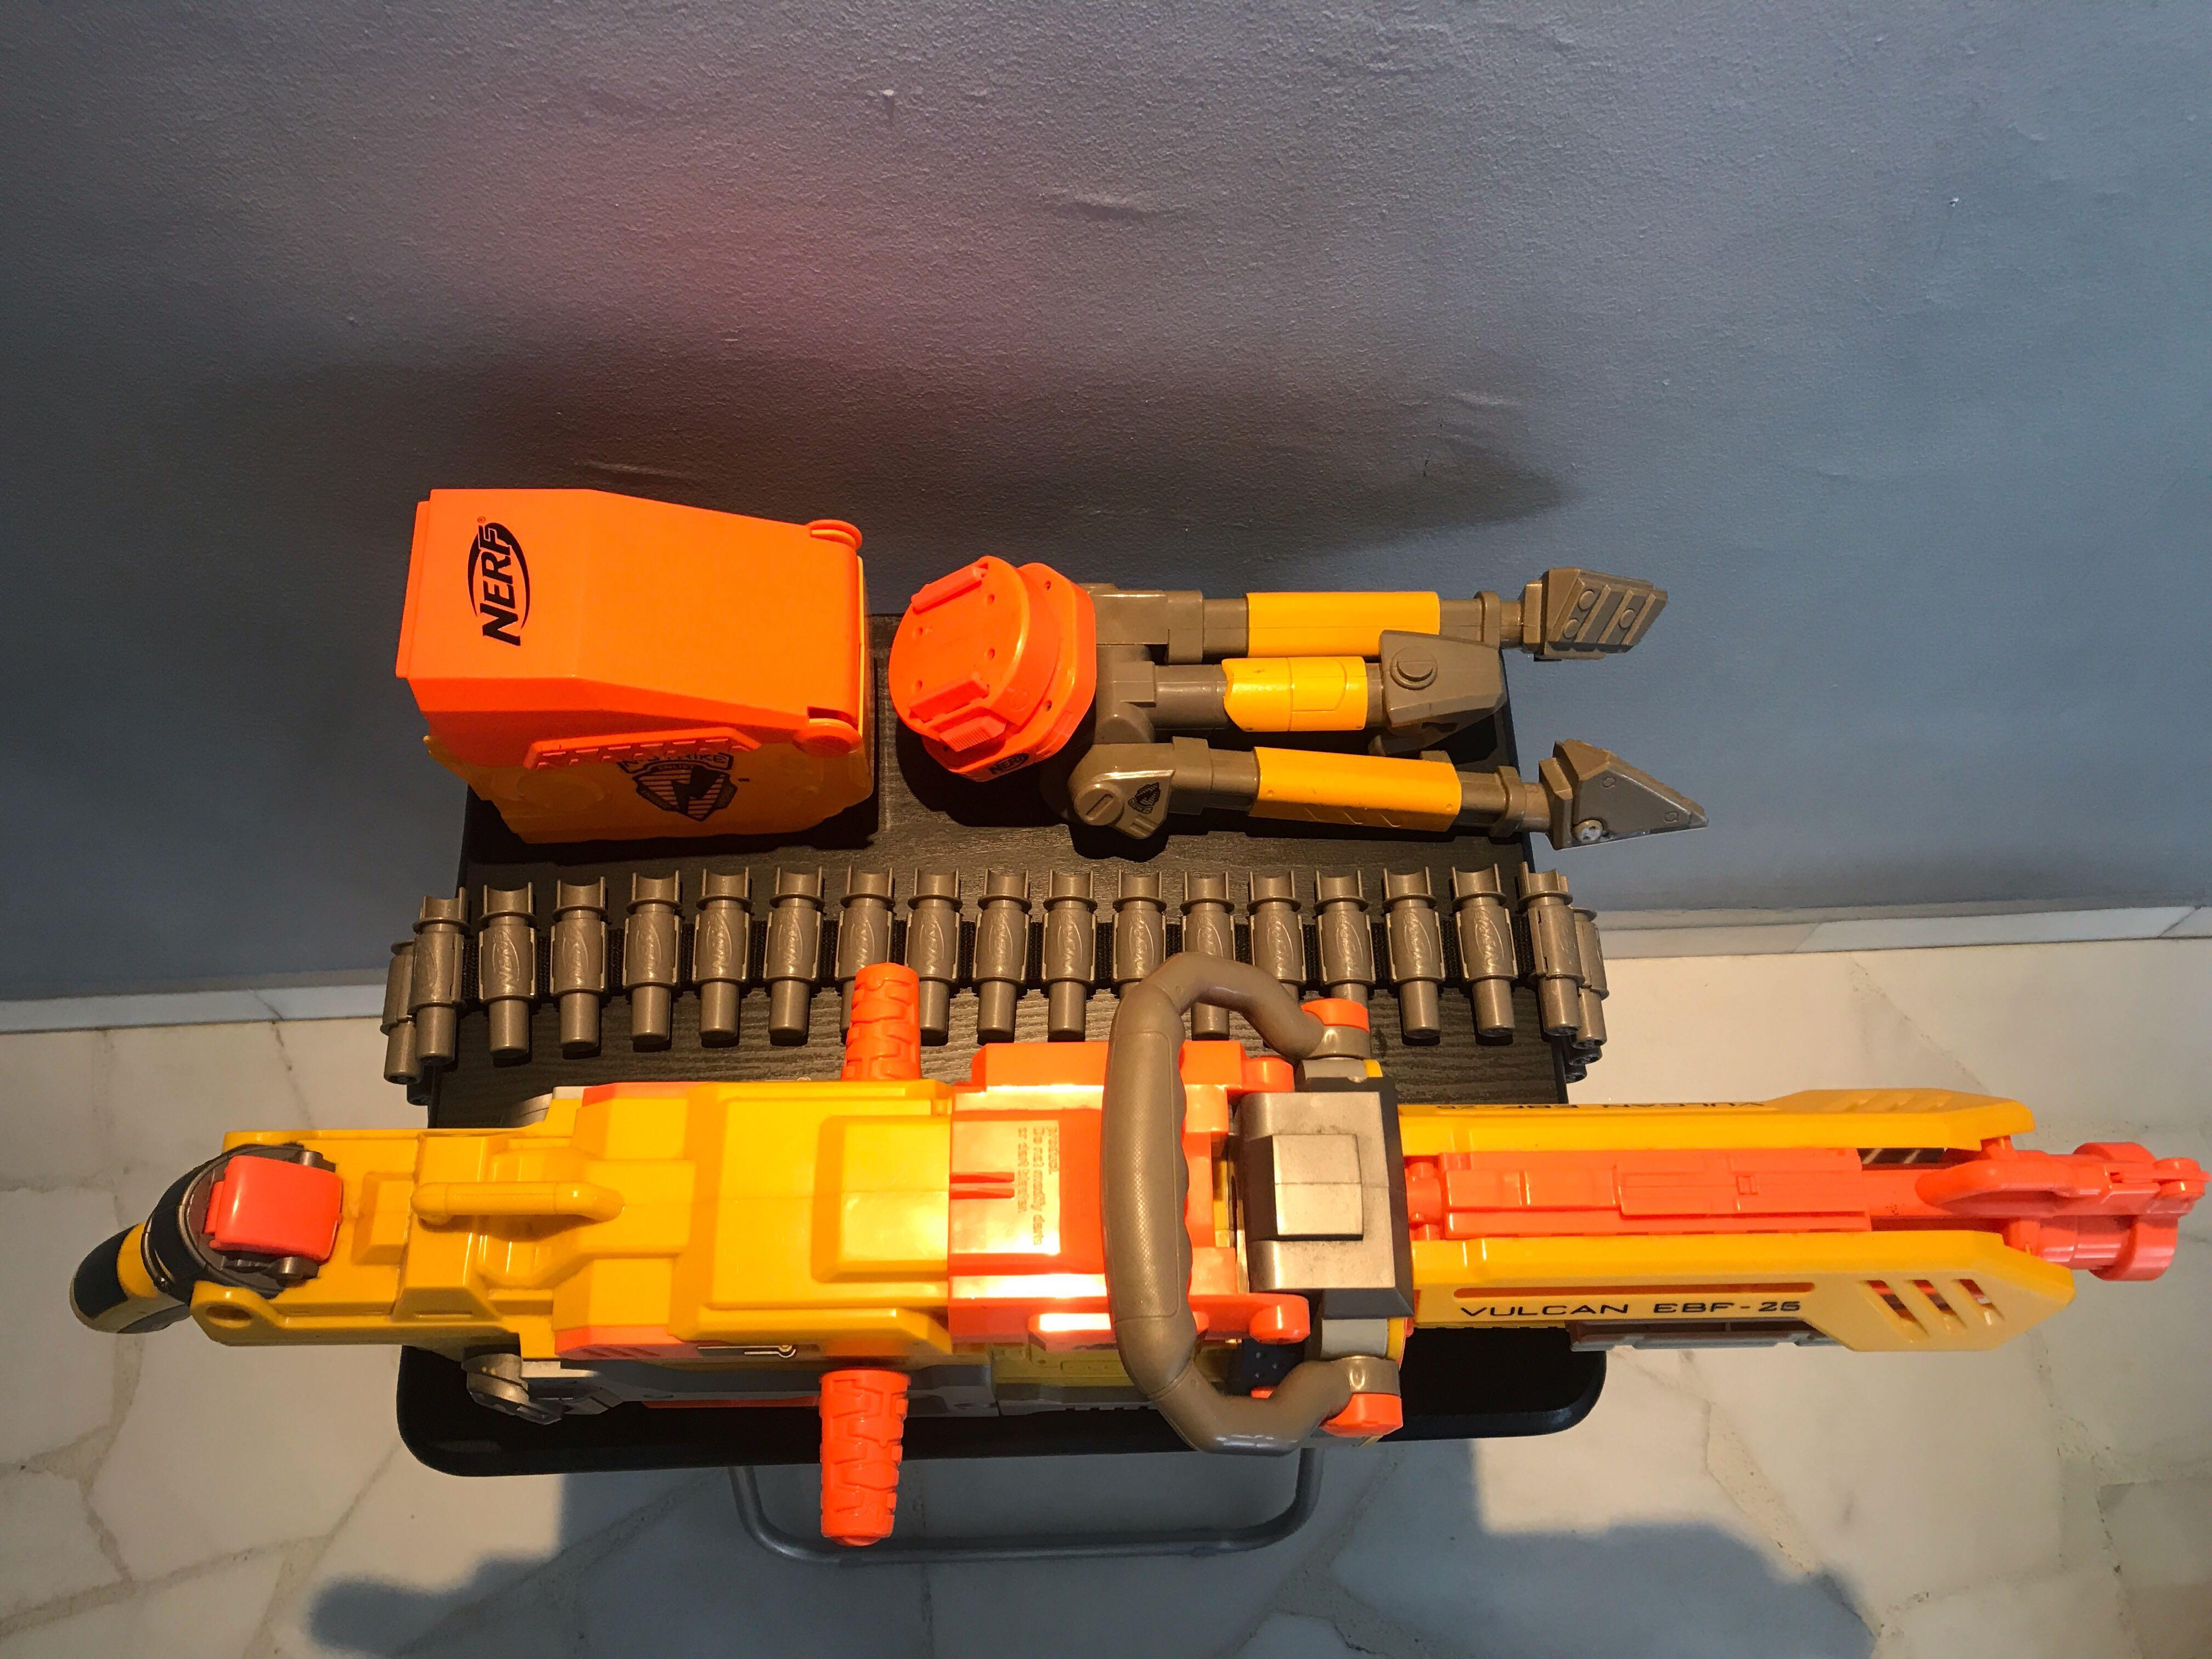 Nerf Vulcan EBF-25 Yellow And Orange Automatic Toy Dart Gun